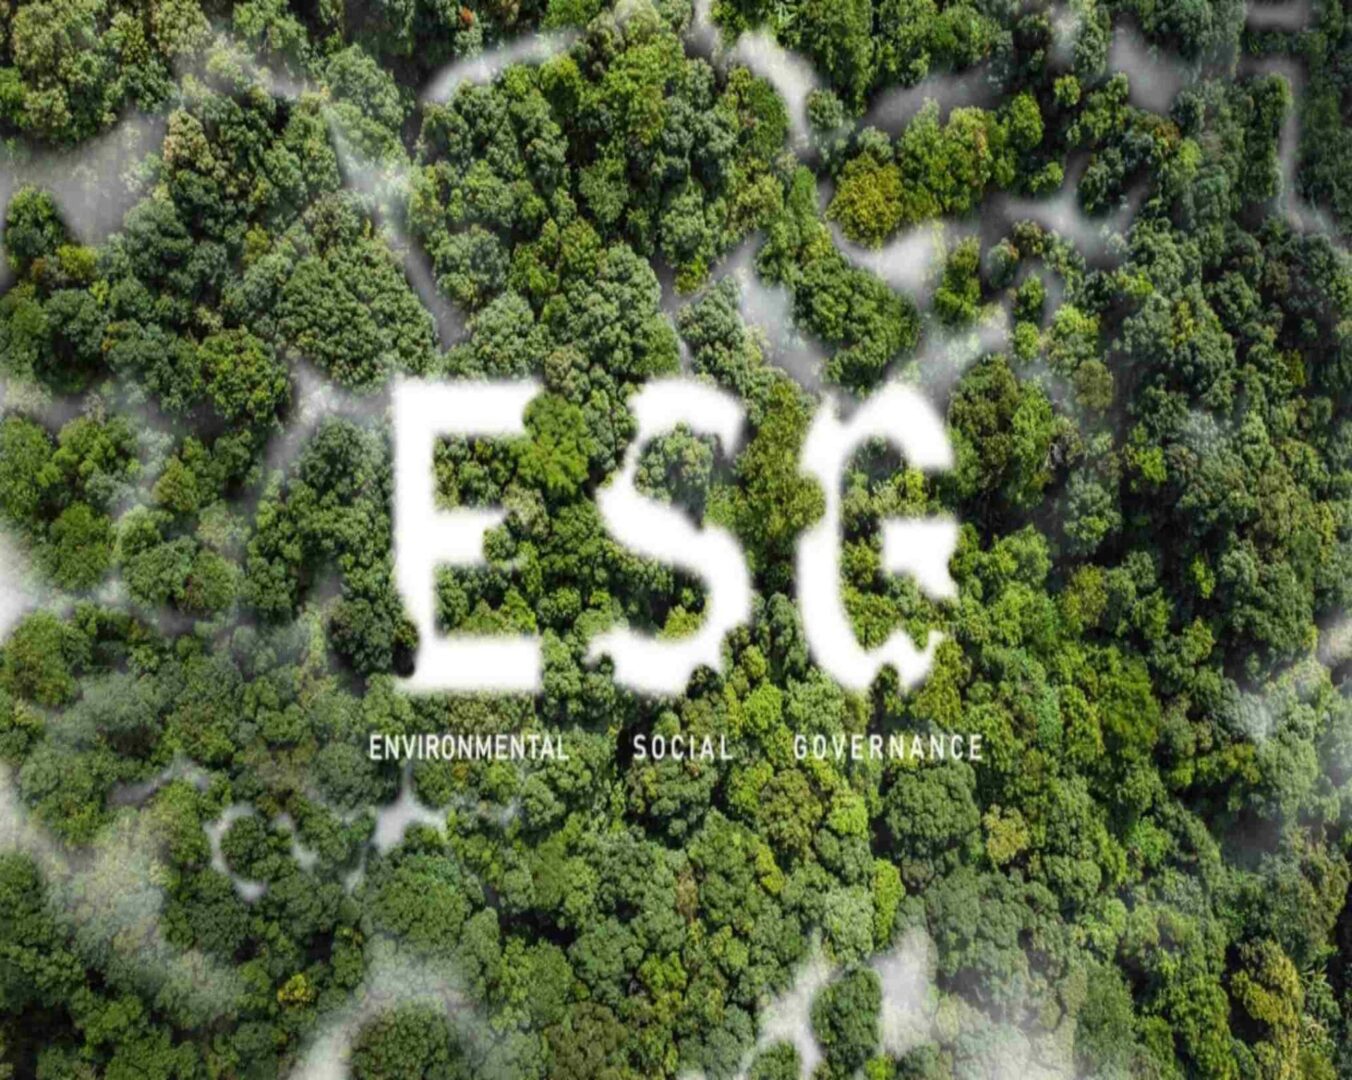 ESG solutions